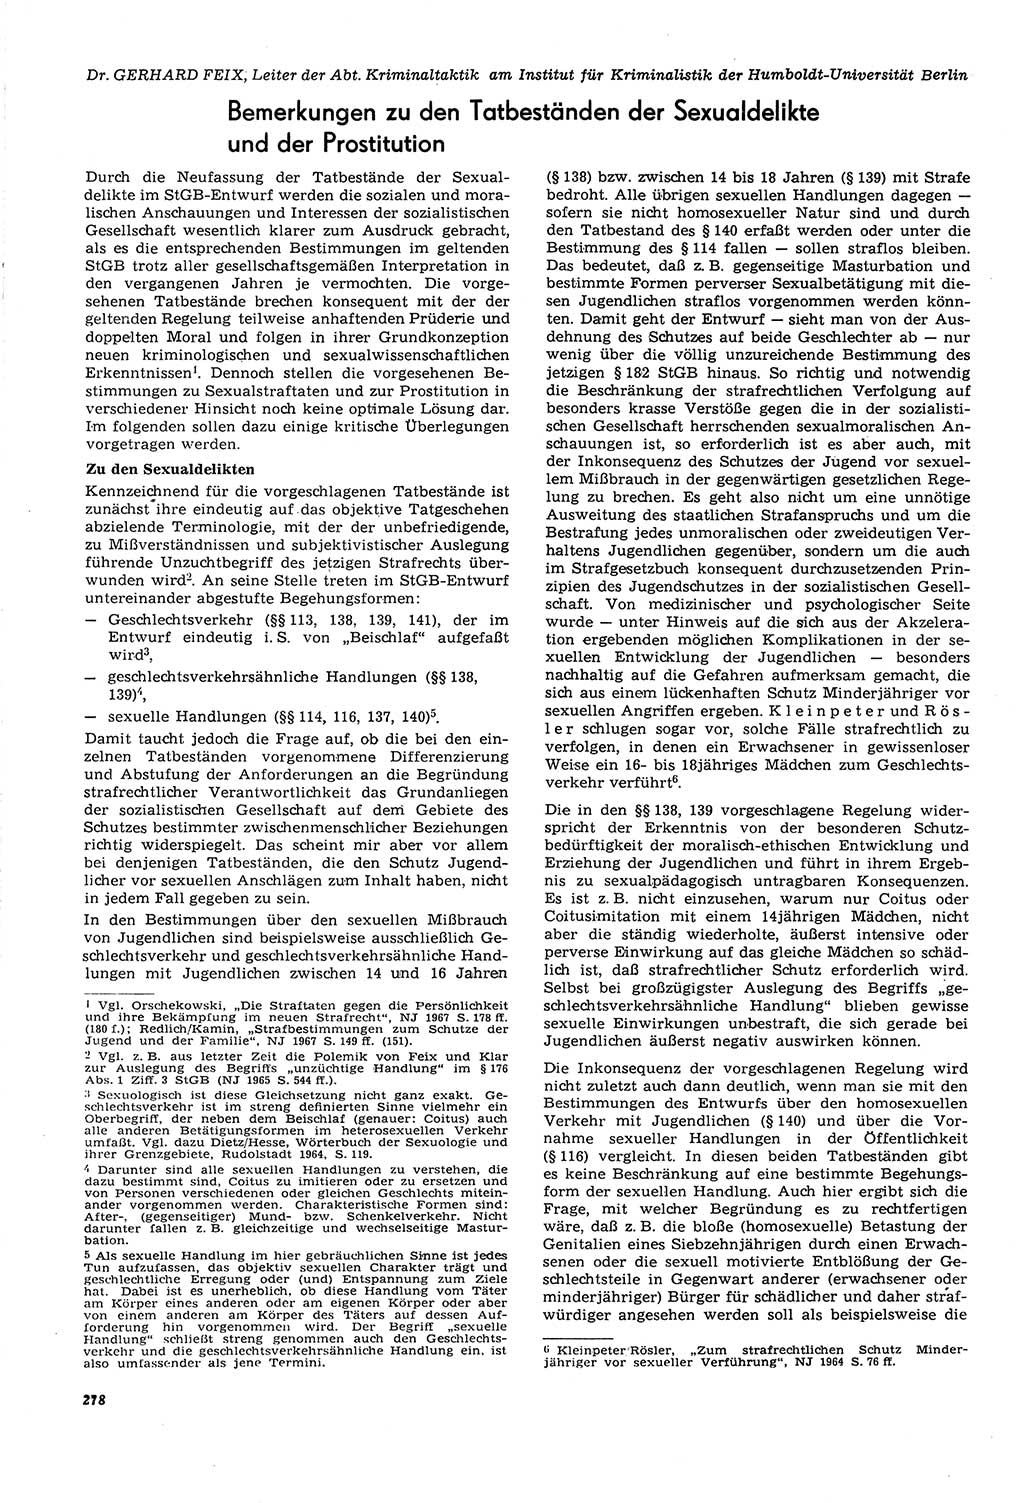 Neue Justiz (NJ), Zeitschrift für Recht und Rechtswissenschaft [Deutsche Demokratische Republik (DDR)], 21. Jahrgang 1967, Seite 278 (NJ DDR 1967, S. 278)